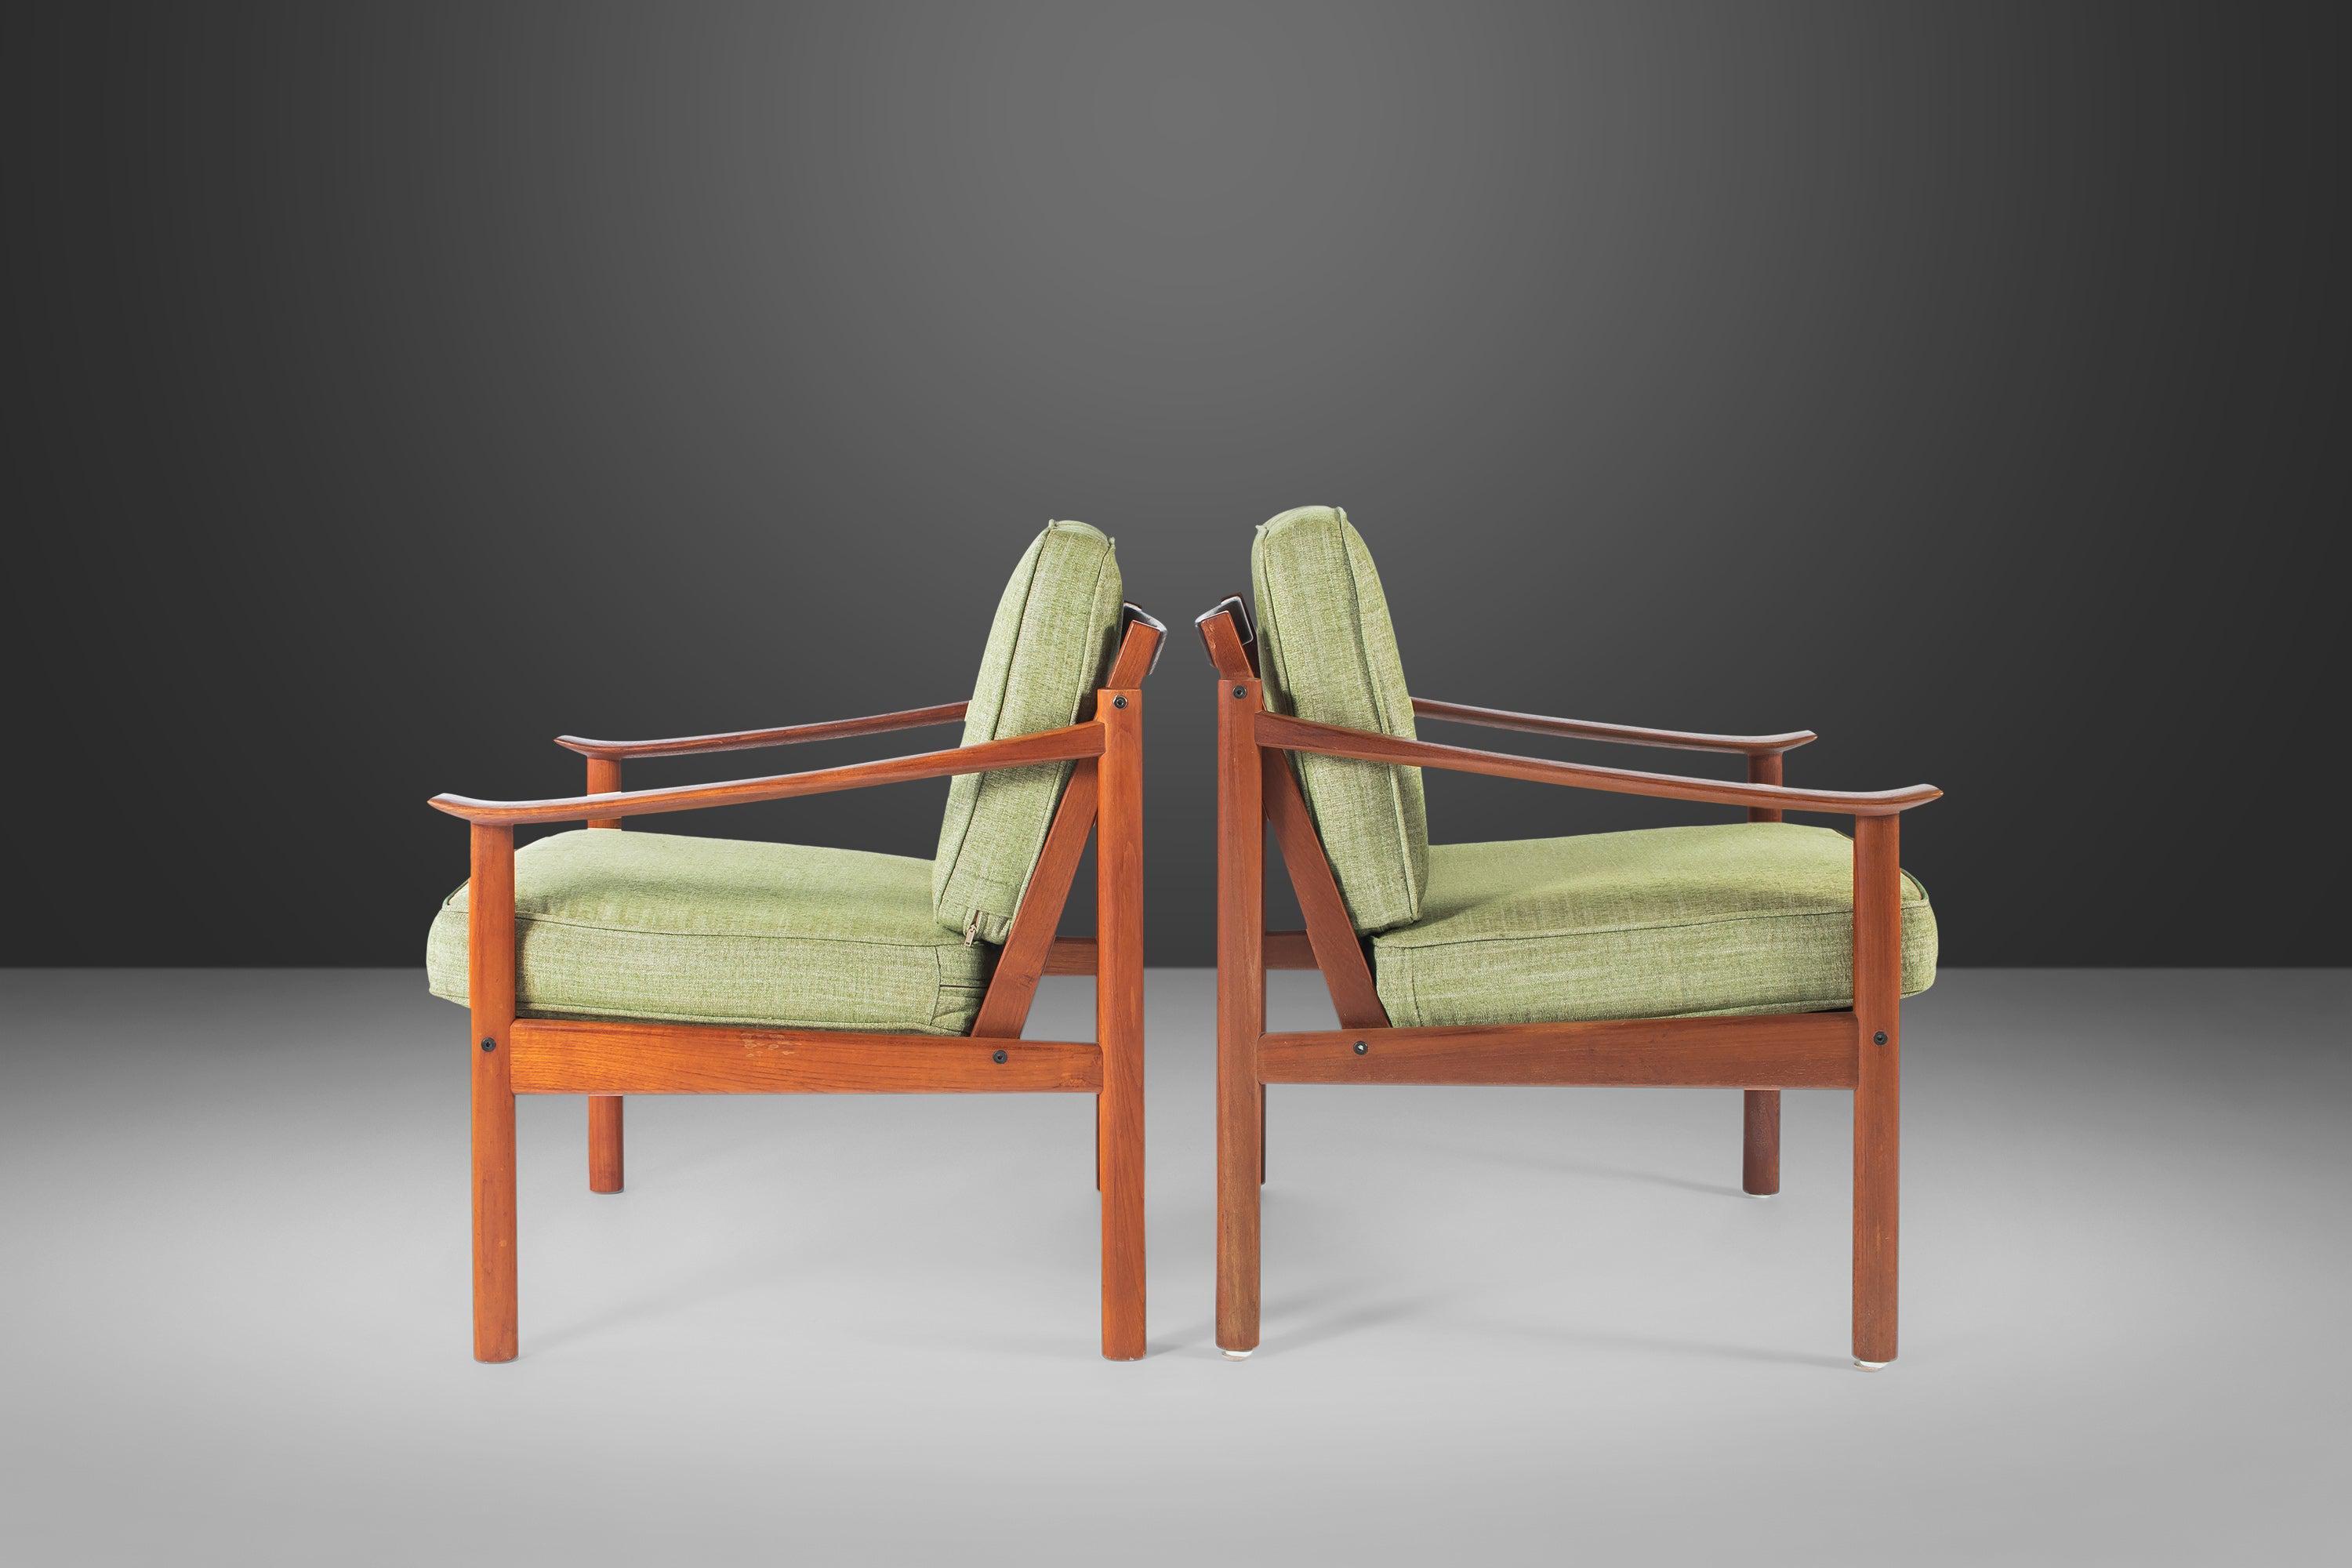 Aussi confortable qu'esthétiquement captivant, cet ensemble ultra-rare de chaises longues de Peter Hvidt et Orla Mølgaard pour Soborg Mobelfabrik est la quintessence de l'art fonctionnel. Avec leurs bras sculptés par des experts et découpés dans du